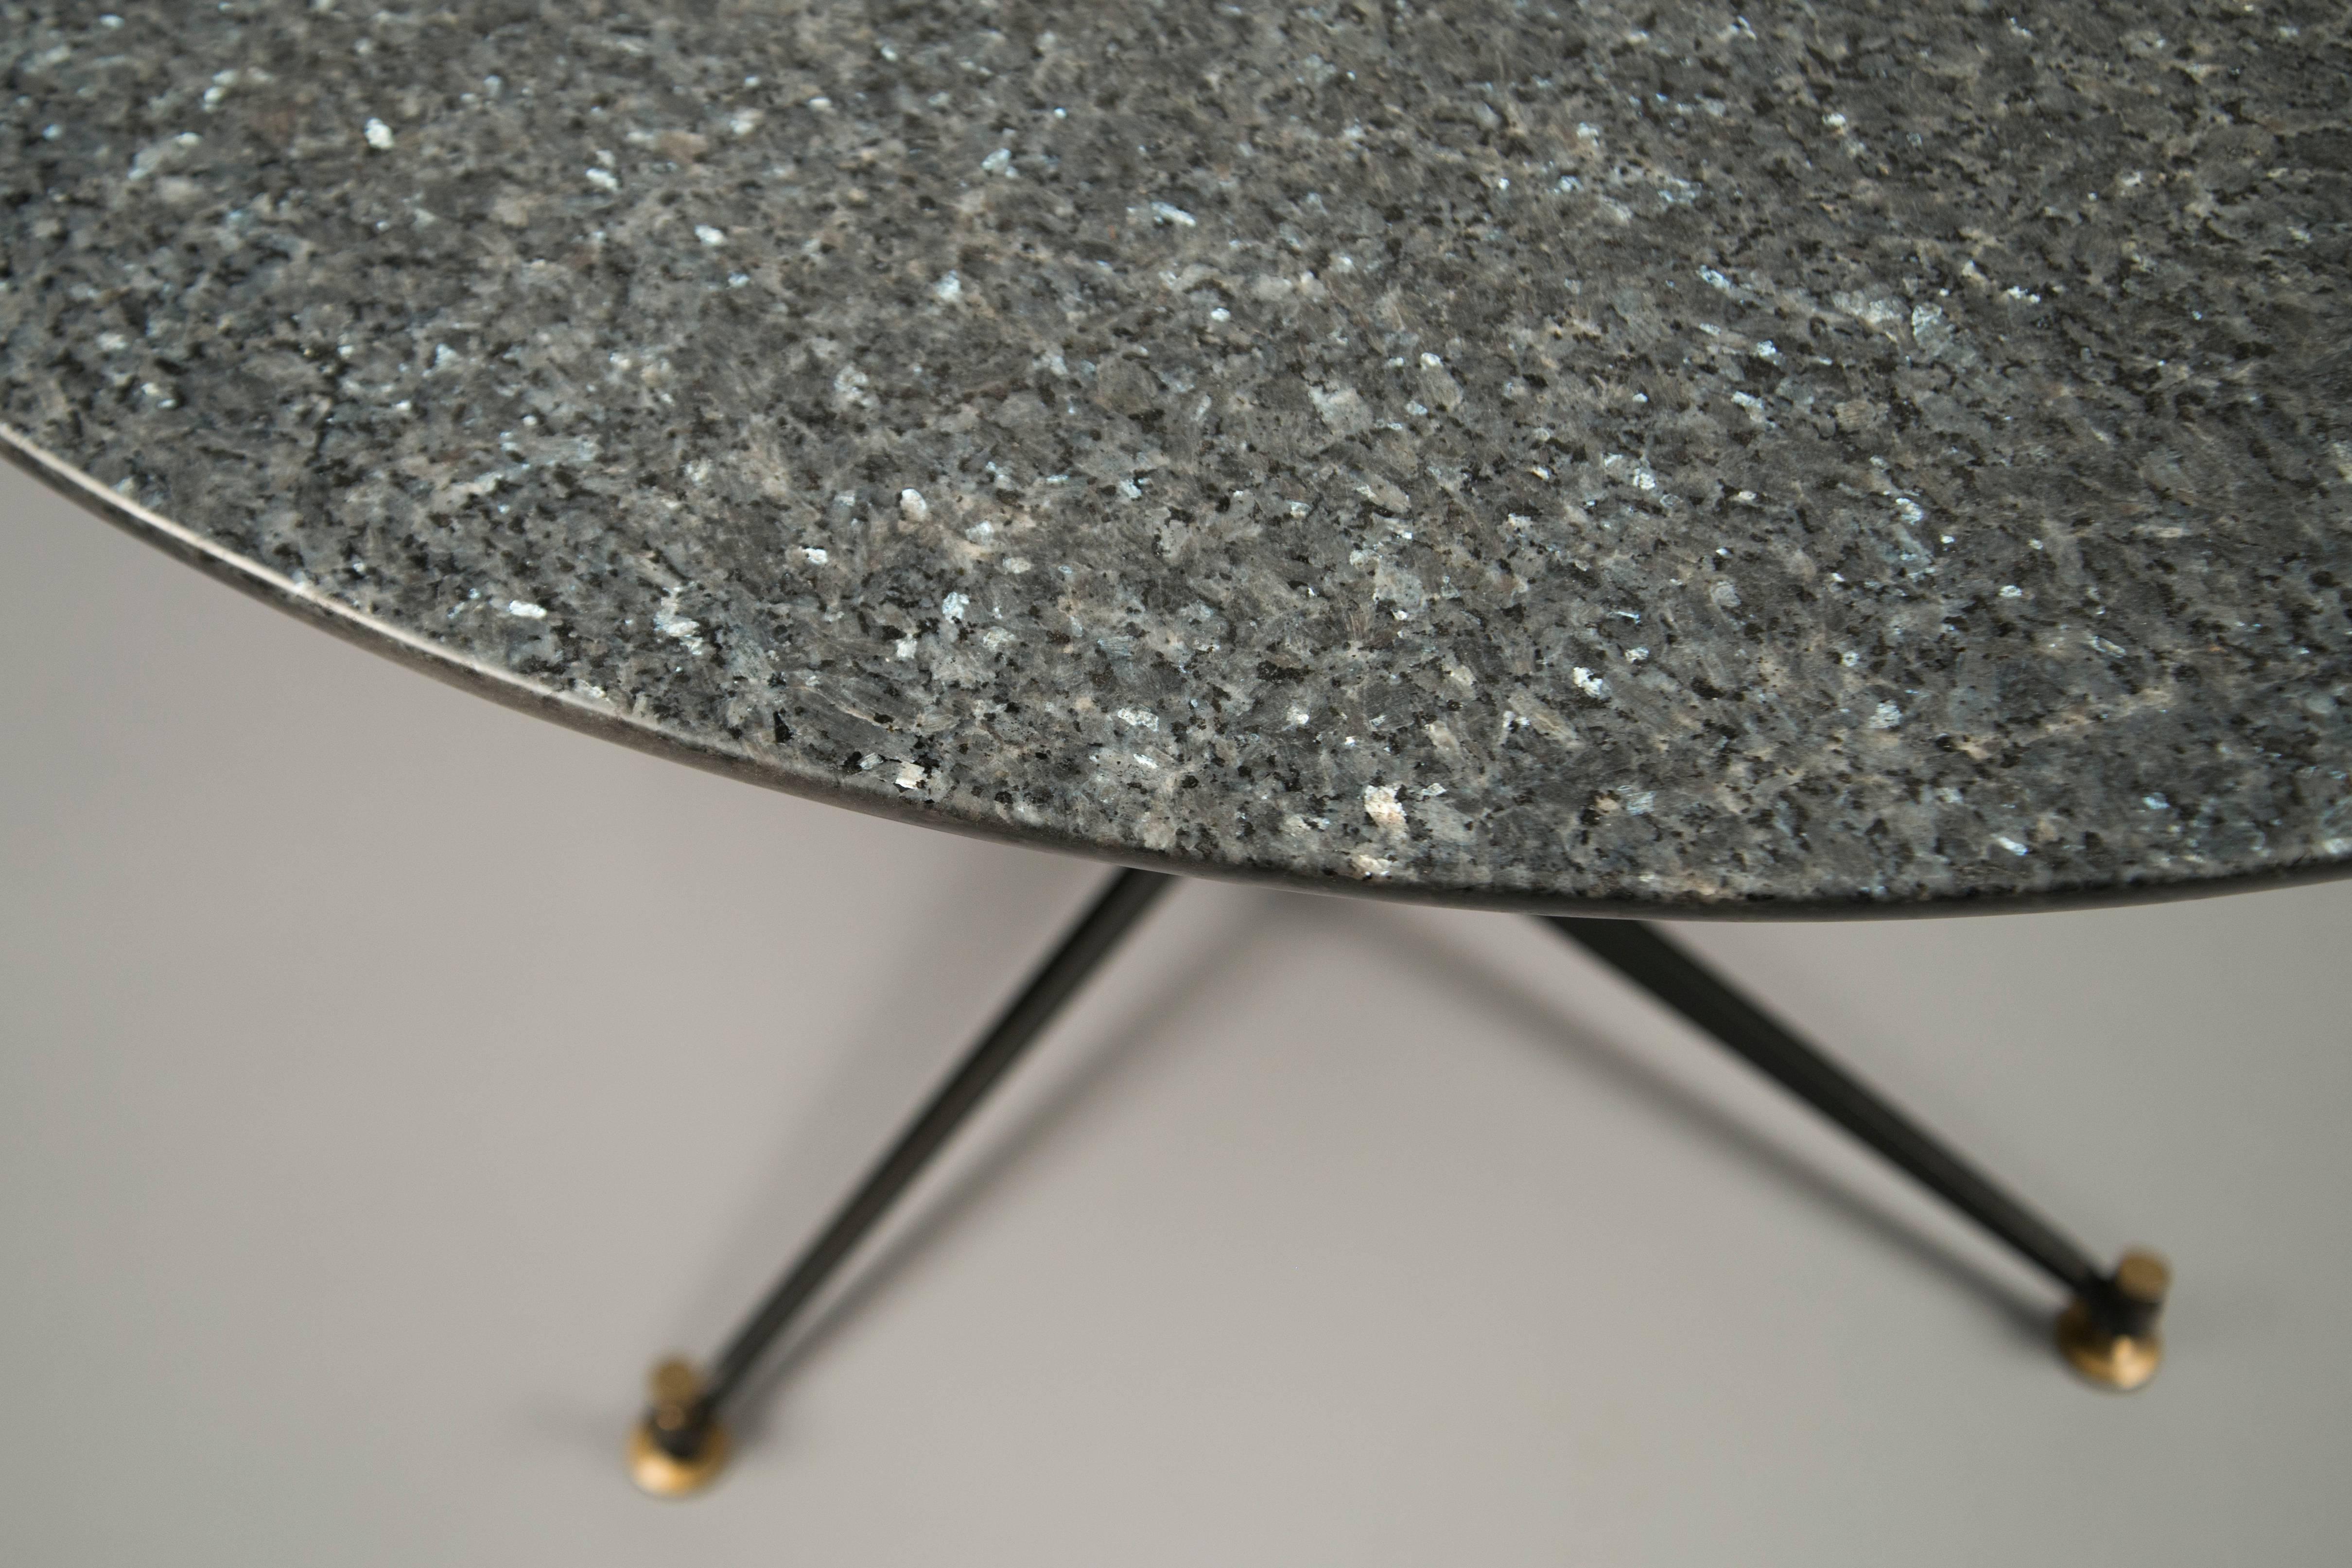 Runder Mitteltisch, bestehend aus einem Sockel aus schwarzem Metall mit Schrauben und Säbeln aus Bronze, der eine Platte aus grauem Granit trägt.
Unsere Nummer N-10244.